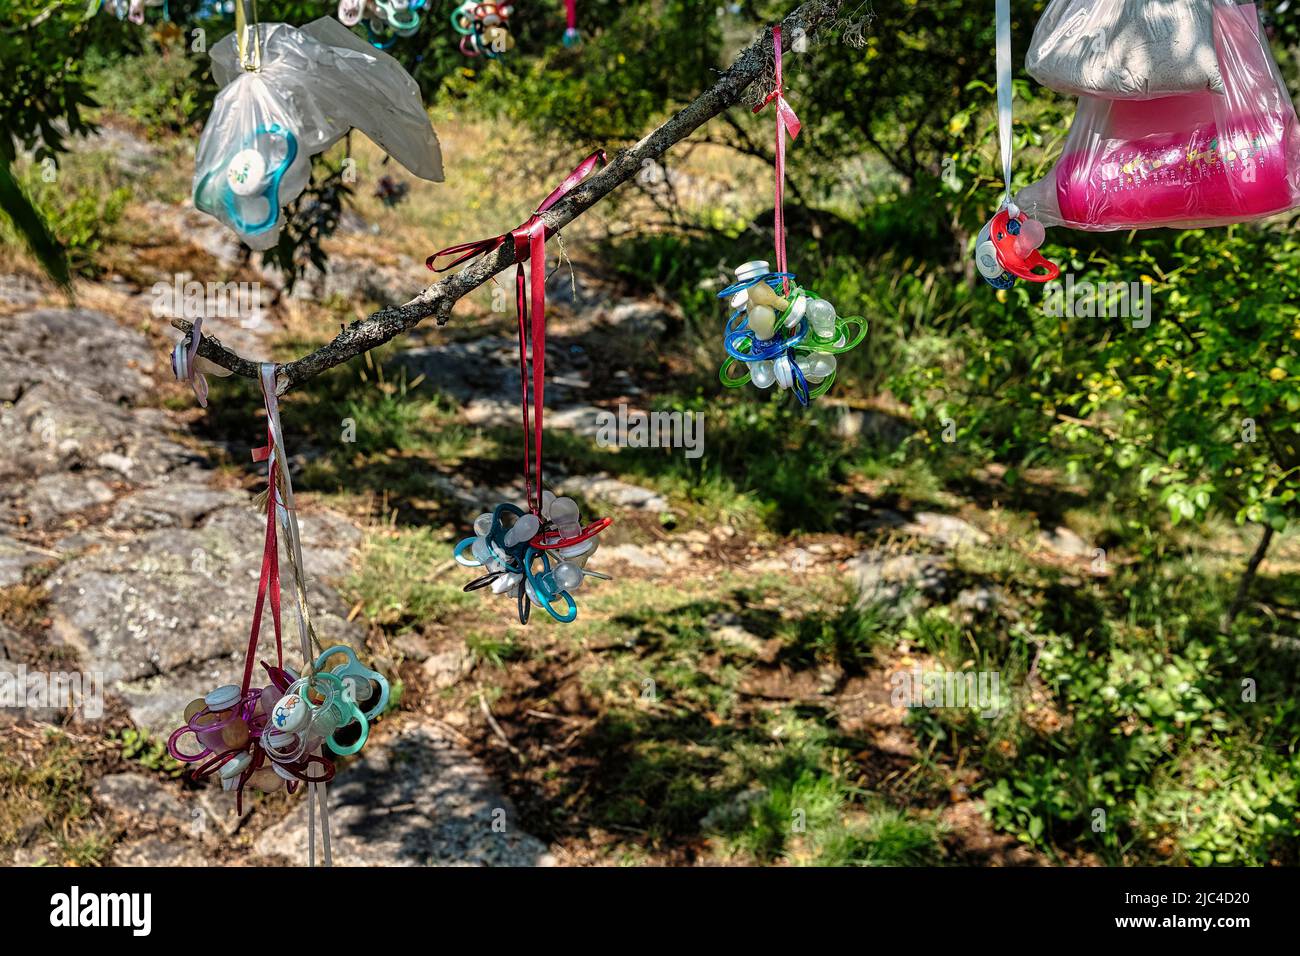 De nombreux mannequins et biberons colorés jetés dans des sacs en plastique sont suspendus sur un arbre, un arbre factice, un sevrage, en Suède Banque D'Images